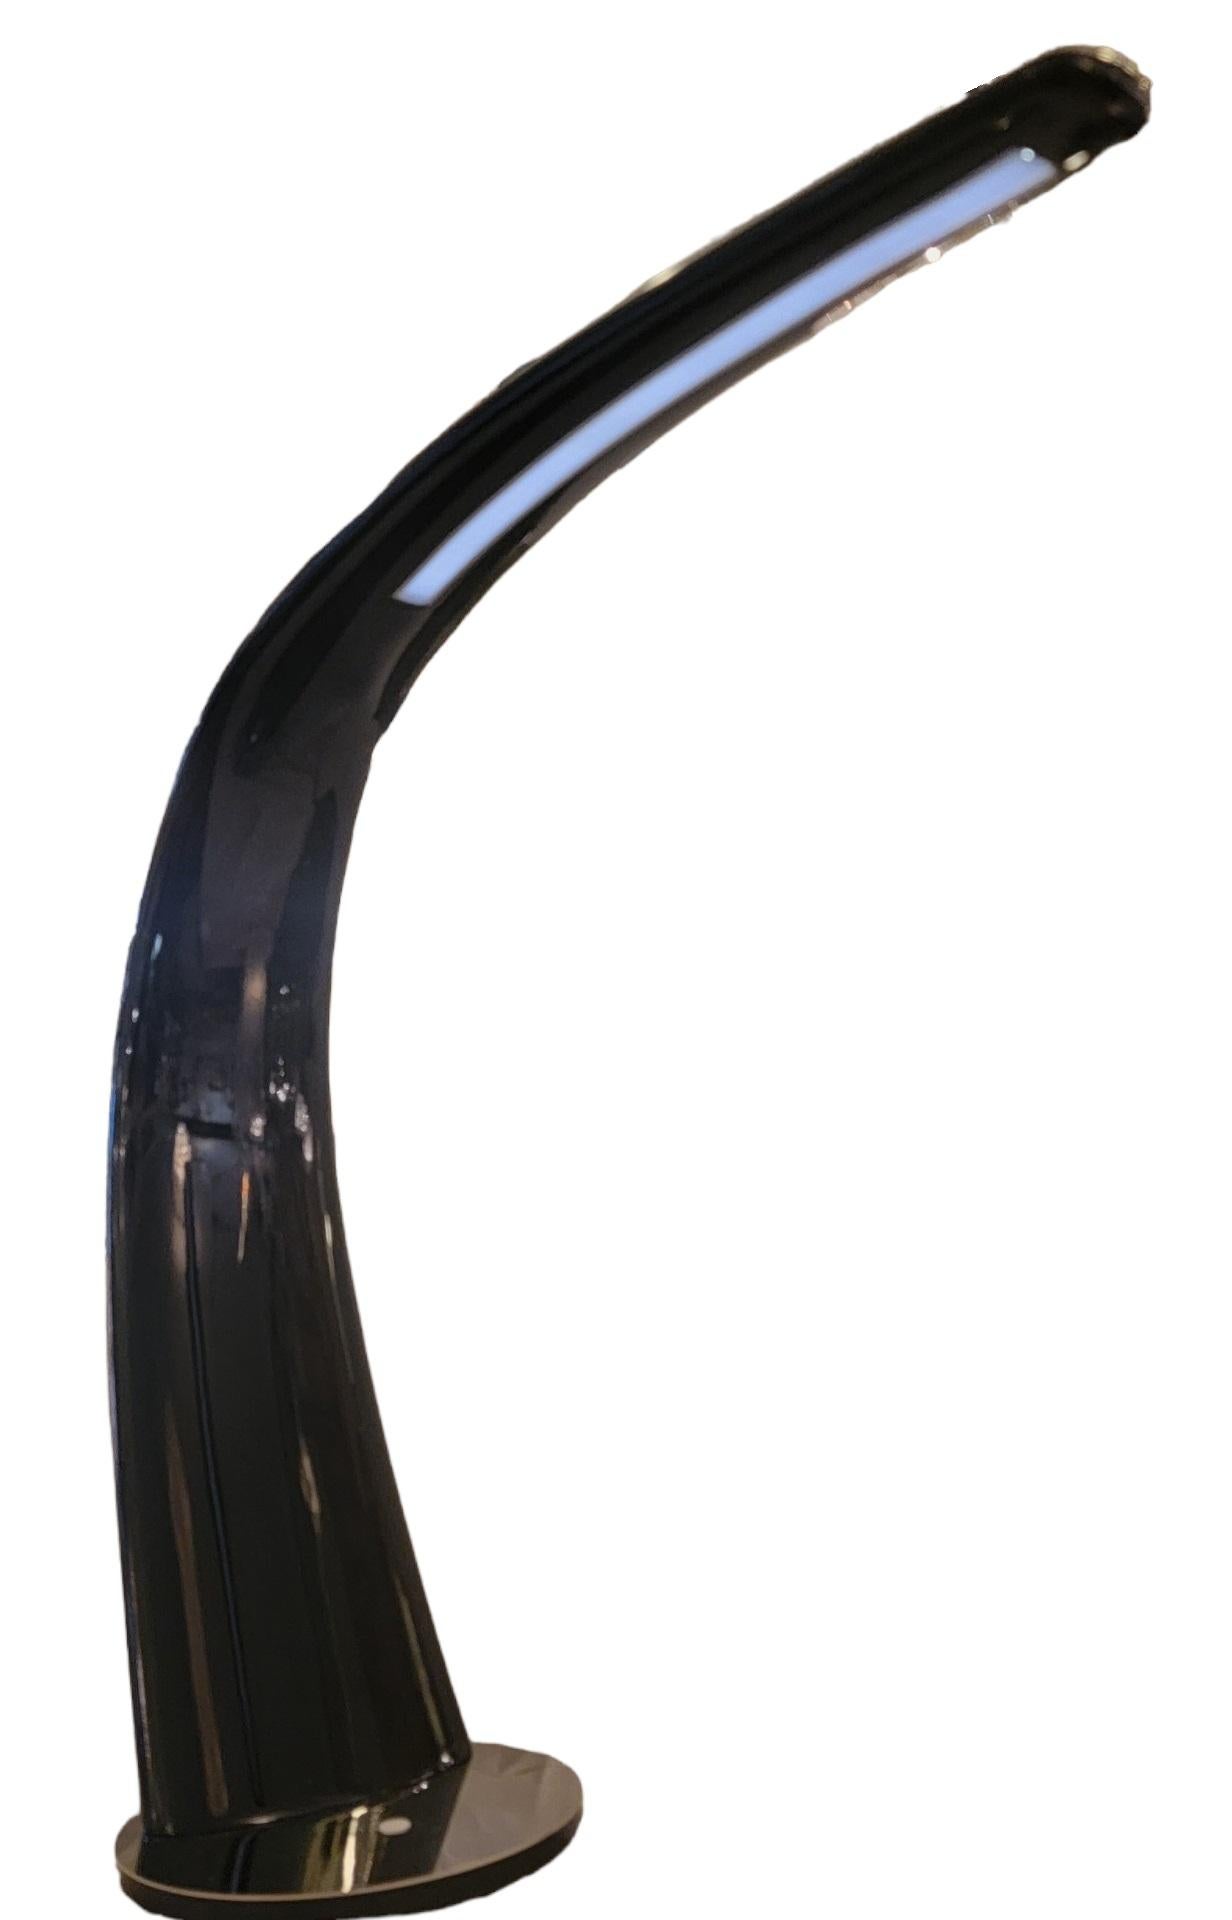 Italienische Cattelan Tischleuchte mit lackiertem Arm Mamba Design von Piero De Longhi für Cattelan Italia. Maße ca. - 24,5h x 7,5w 26,5l

Auf dem Label heißt es -
110-230v 50-60hz